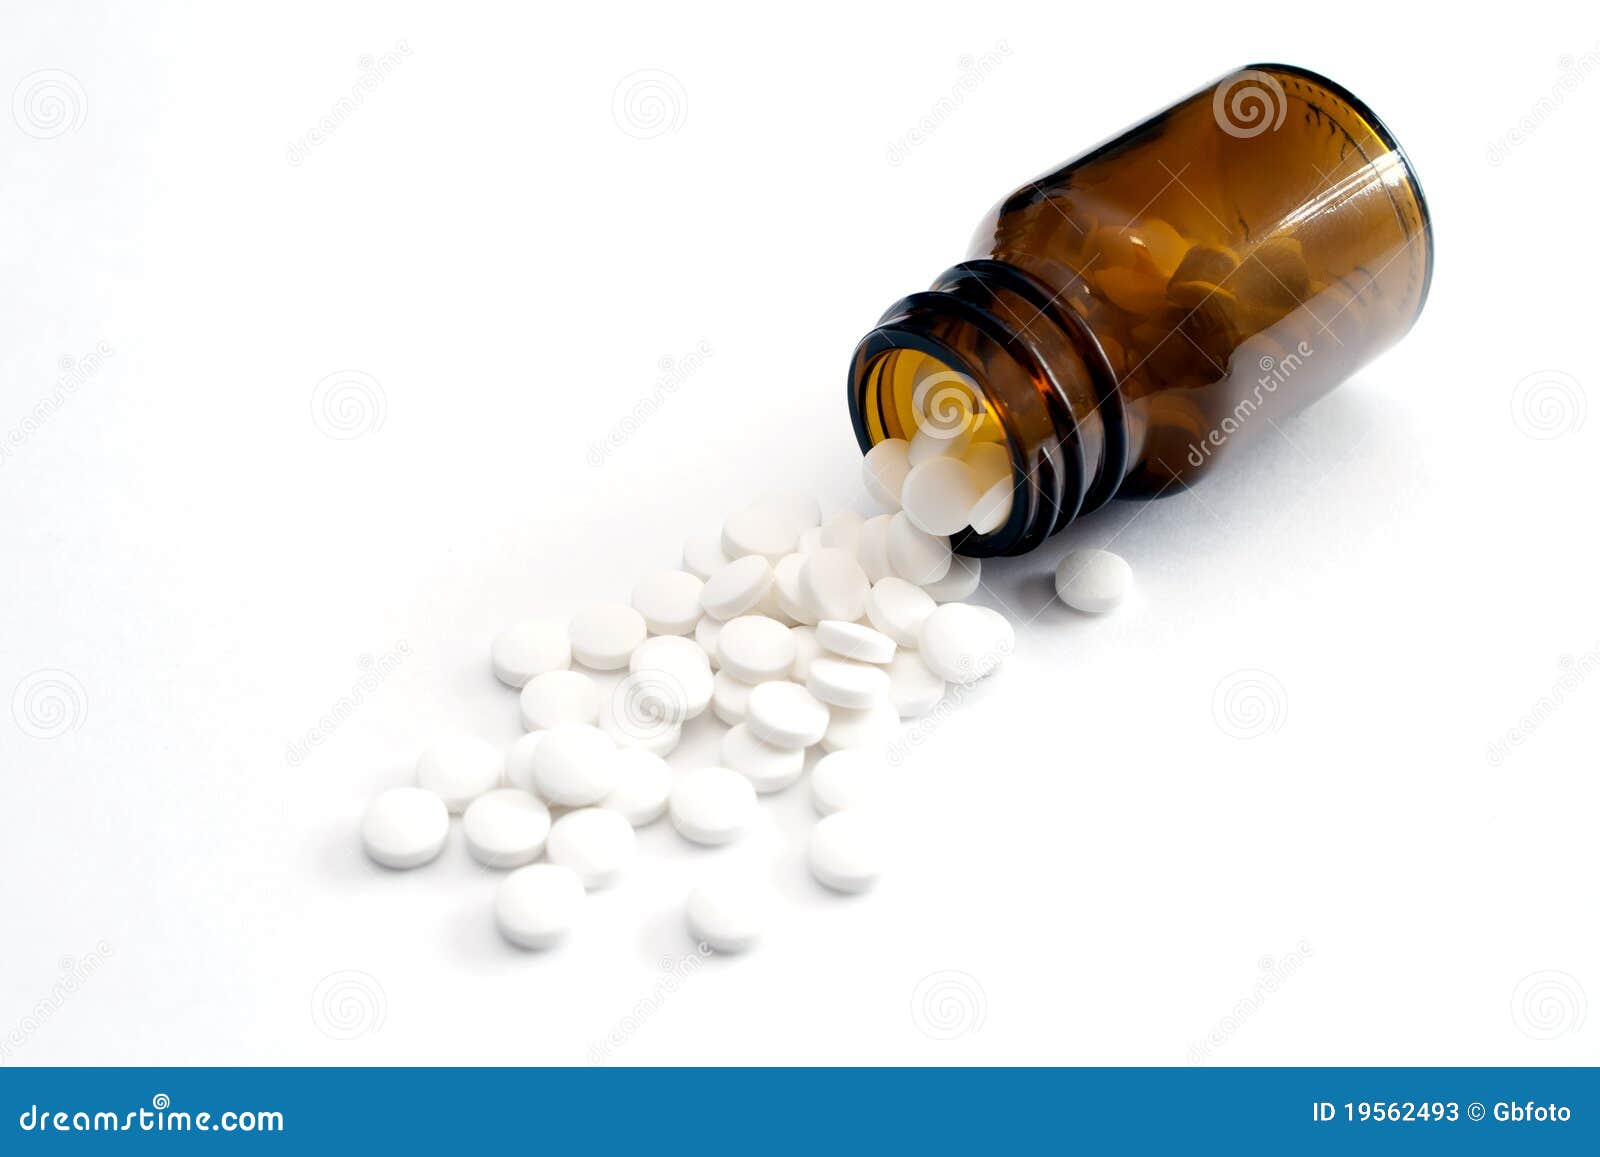 spilt pills